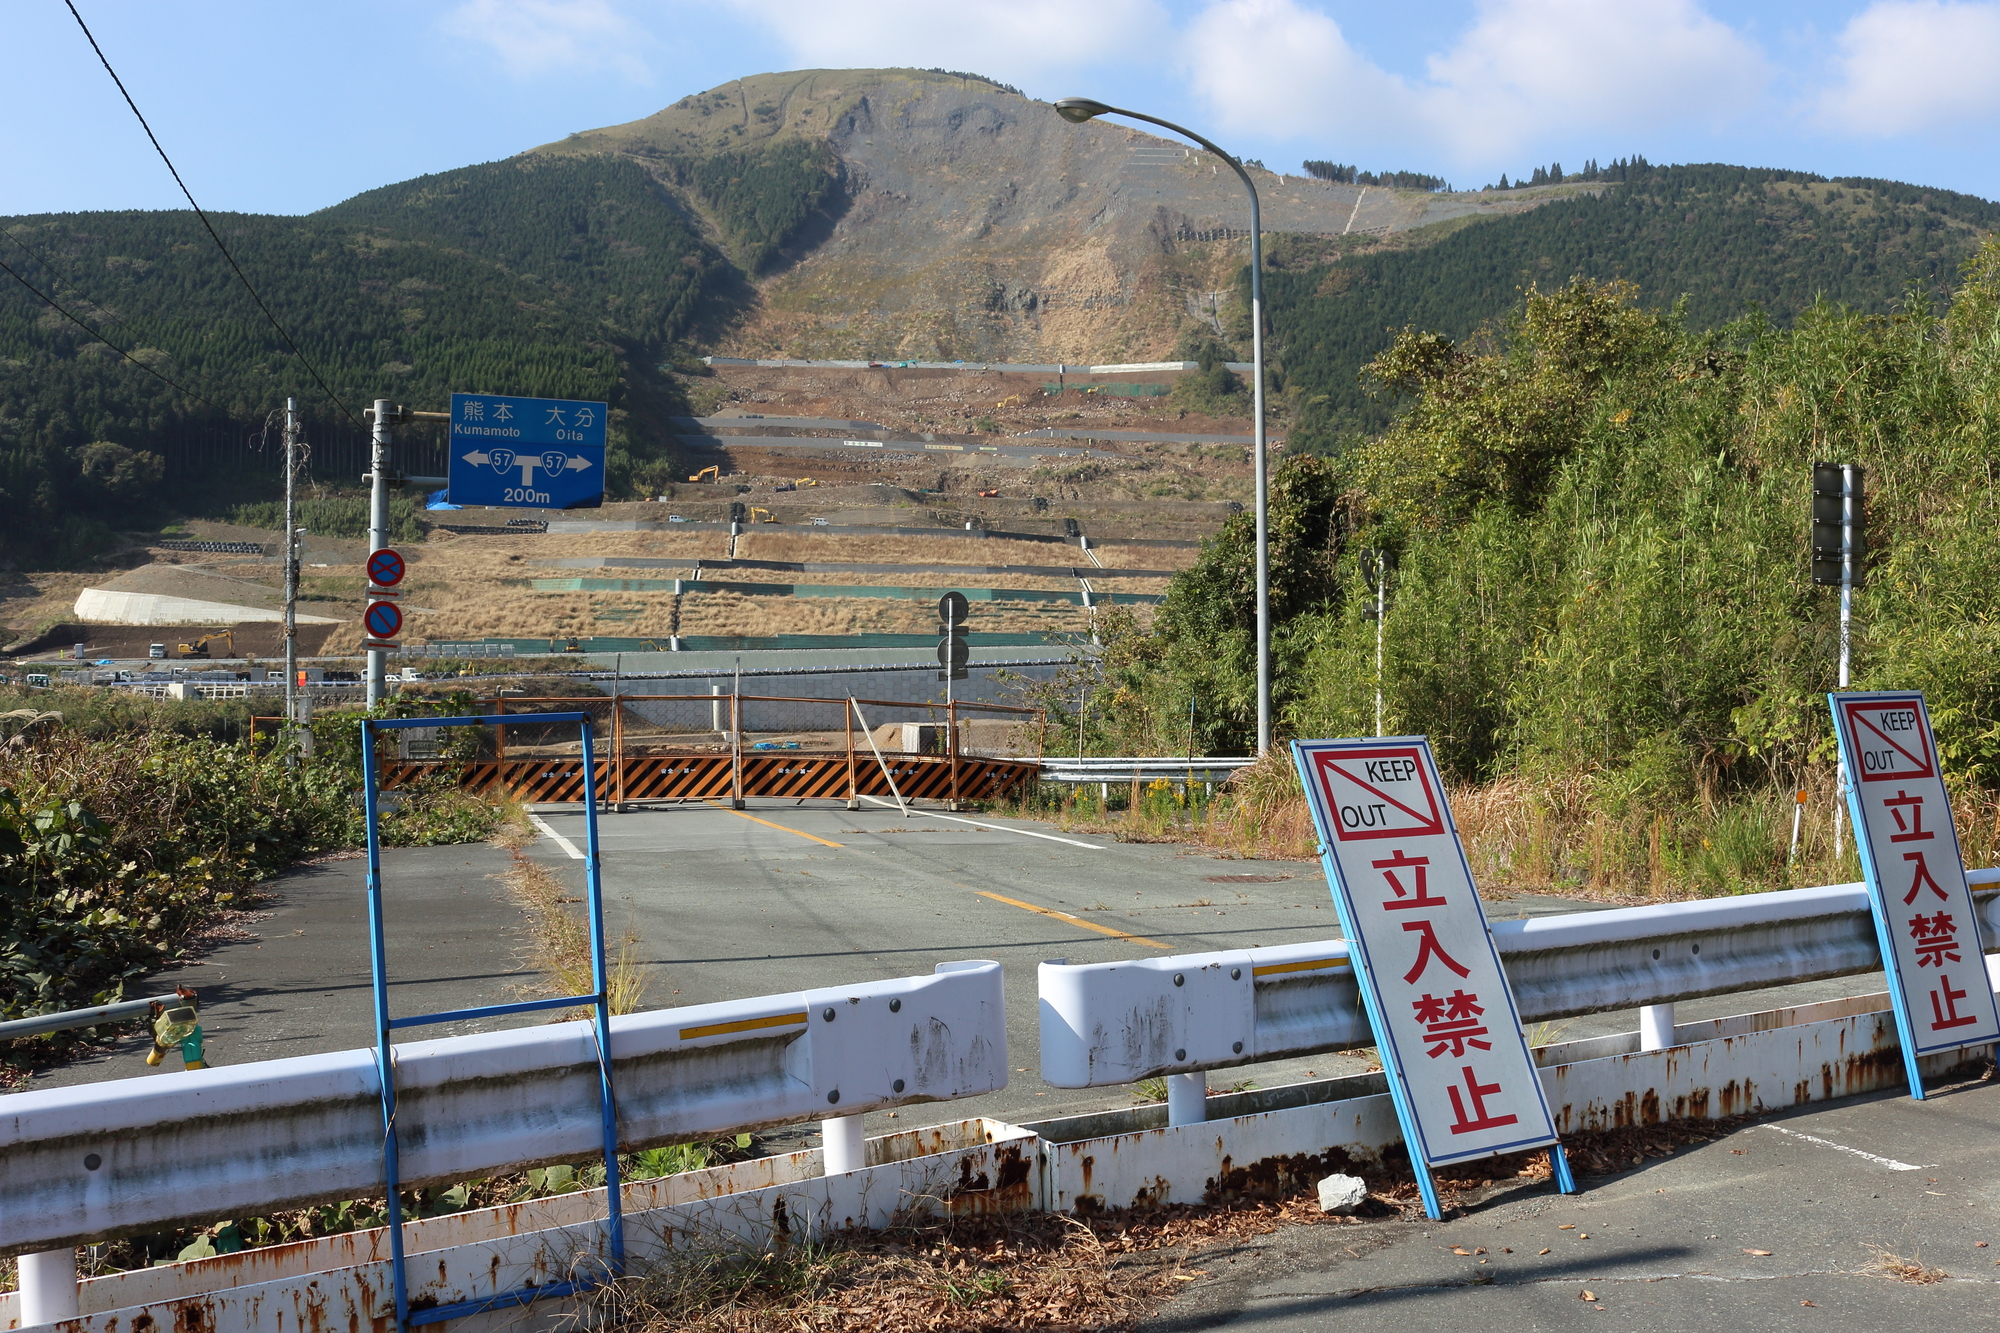 心霊スポット 熊本 阿蘇大橋 跡地 は元有名な自殺スポット 地蔵の効果も無かった